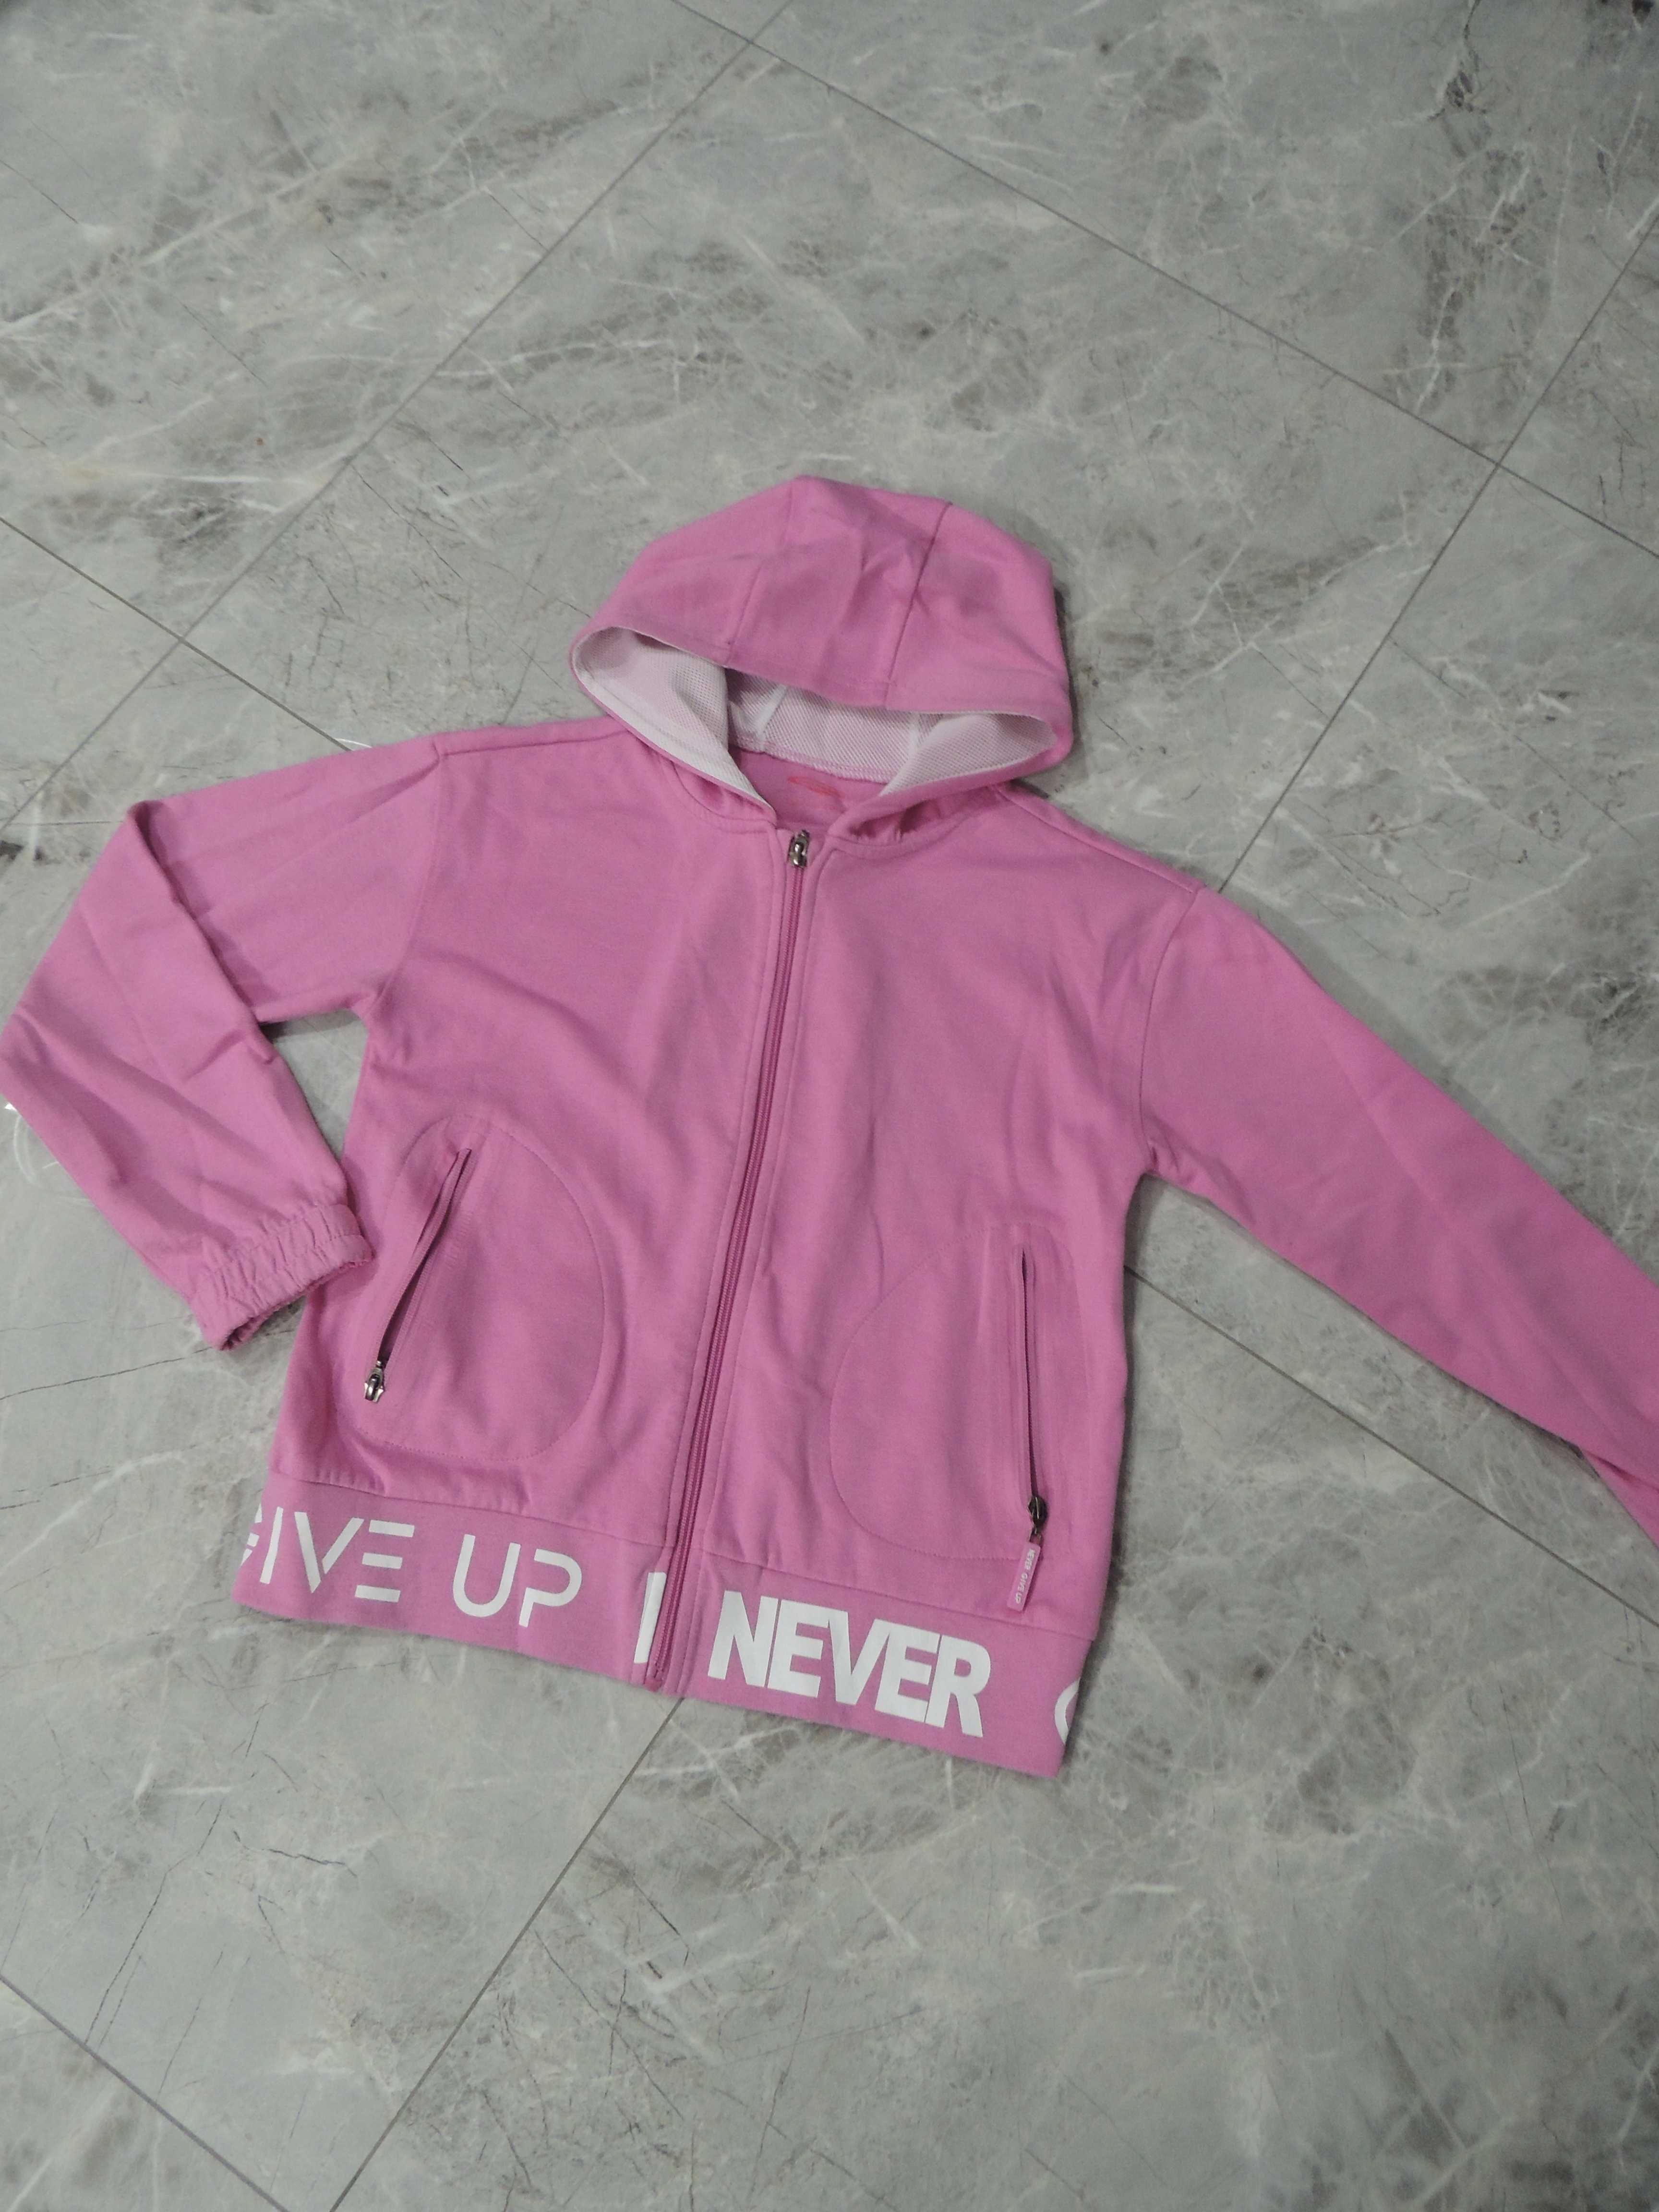 damska sportowa różowa bluza z napisem never give up xs s